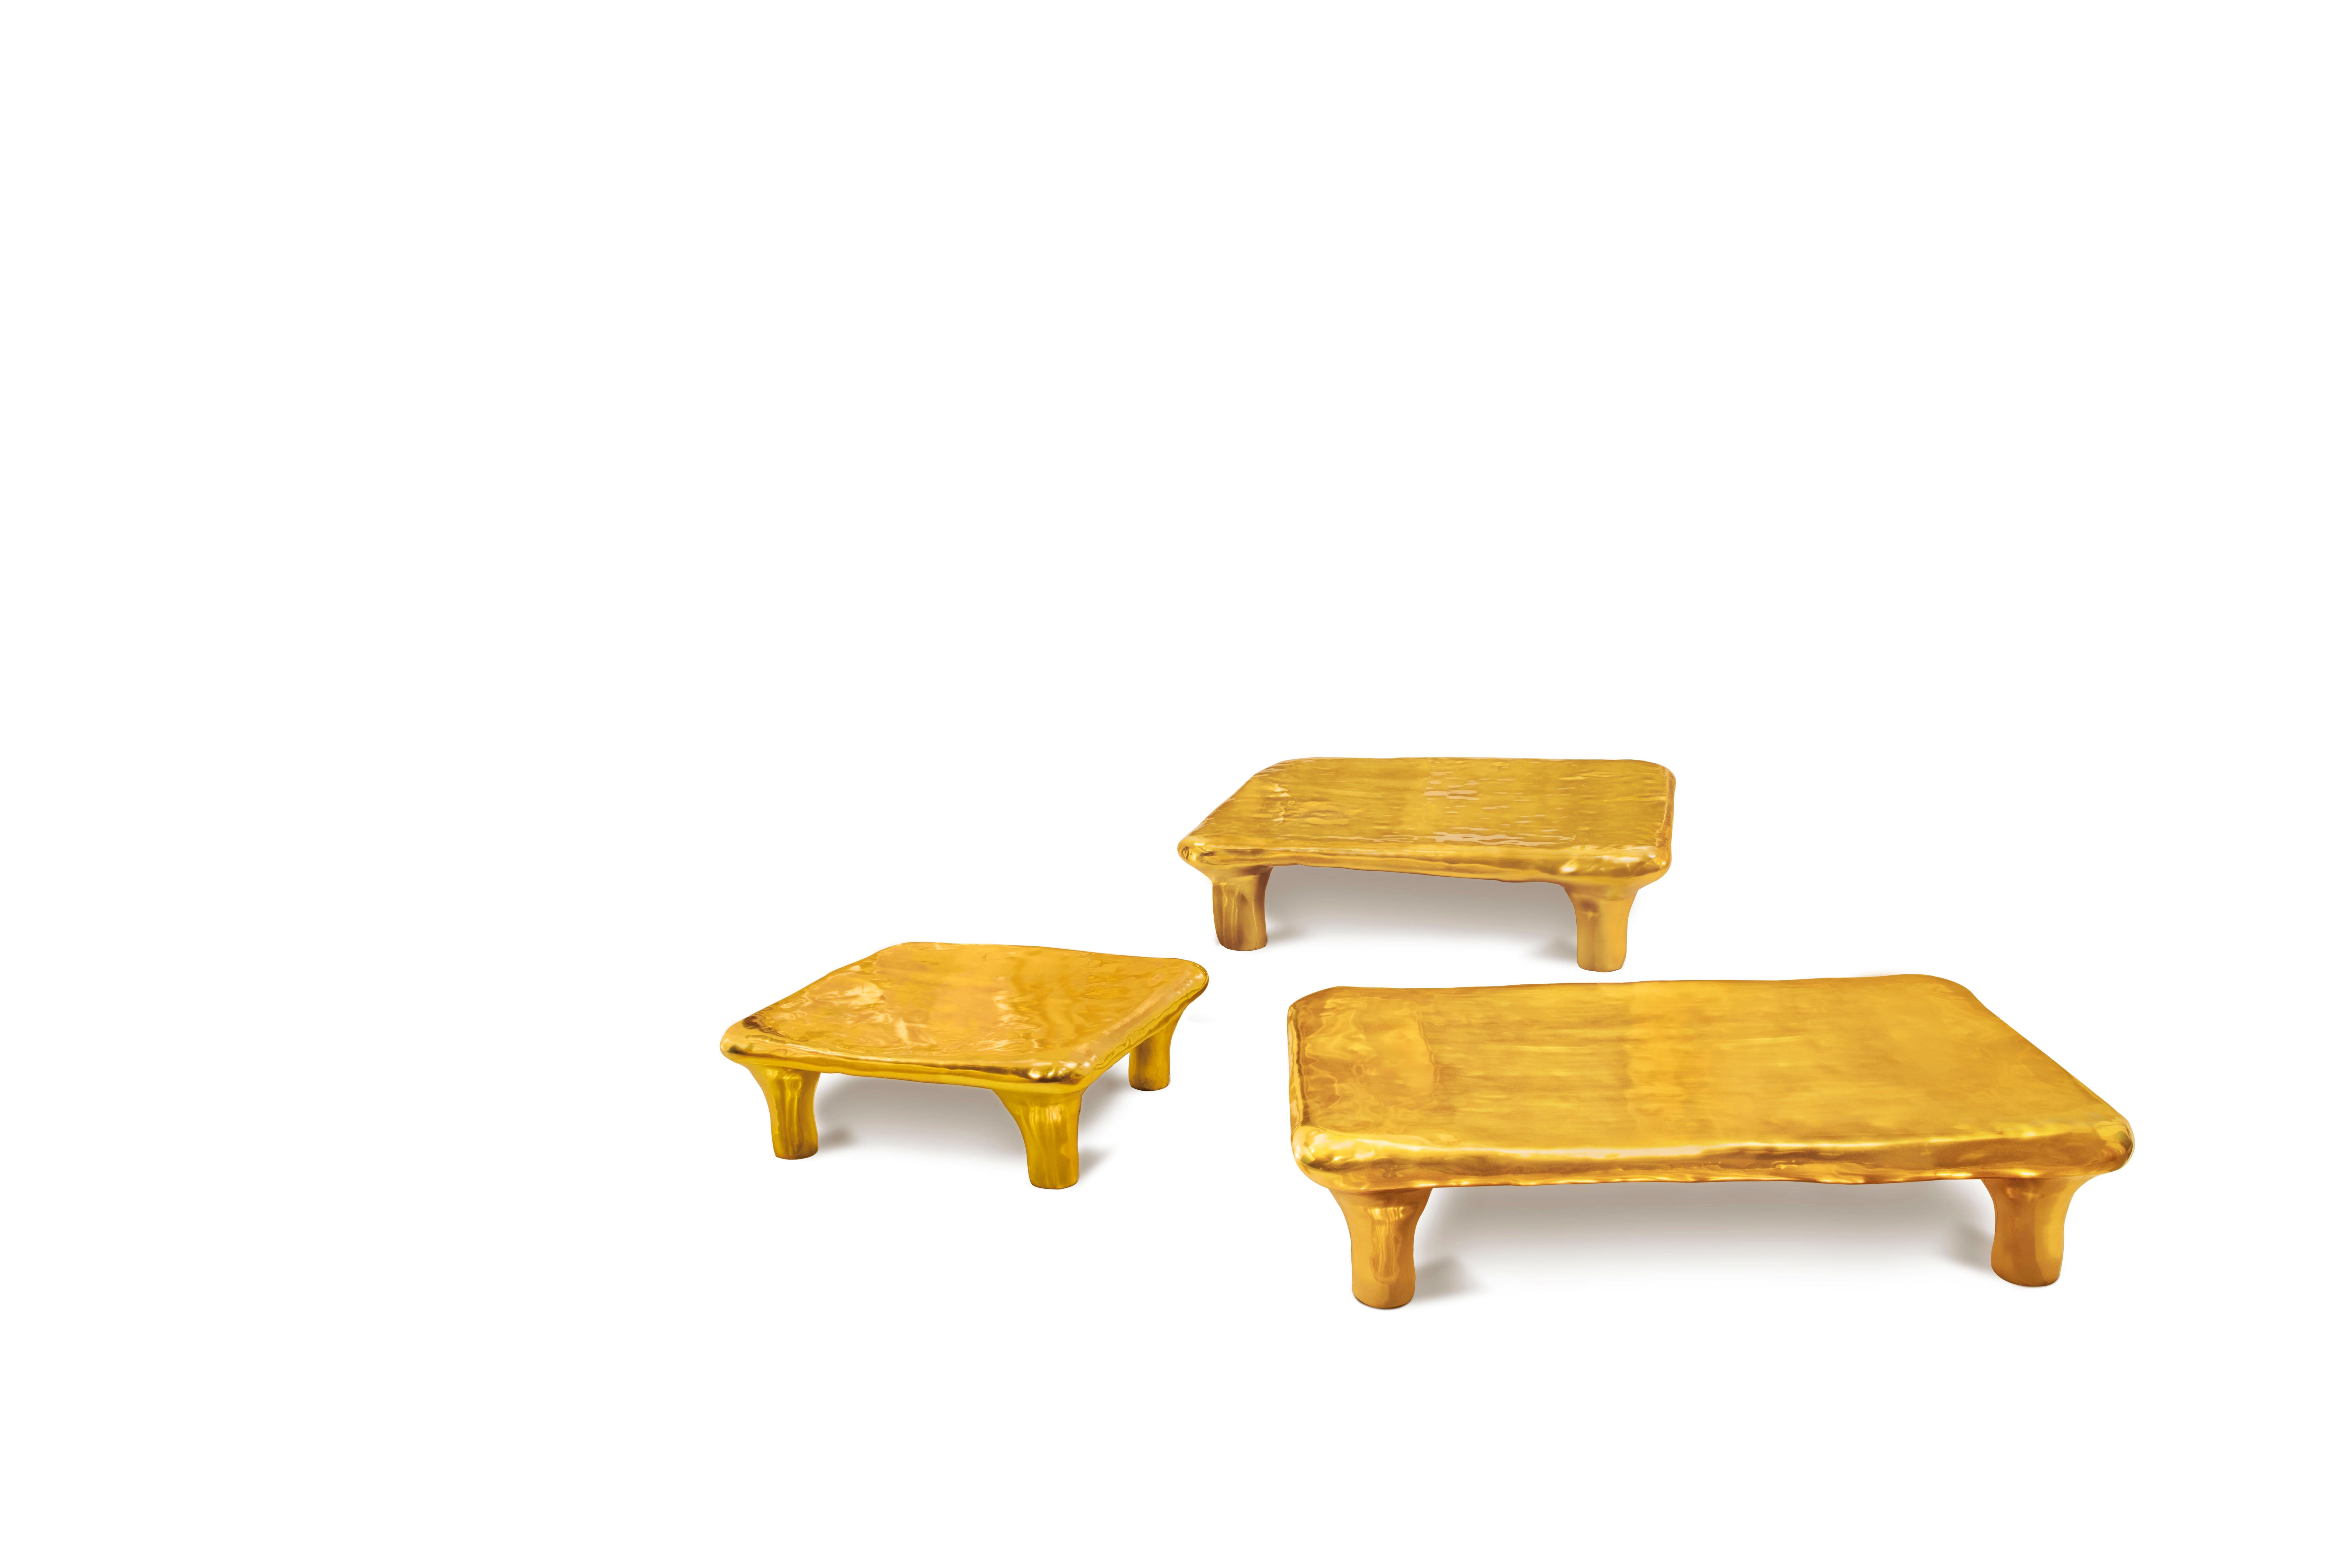 La table basse Euphoria en laiton de Scarlet Splendour est une table basse carrée.

La collection Fools' Gold de formes amorphes, moulées en laiton, est un hommage à l'héritage de l'artisanat indien du métal. L'Inde est en fait l'un des plus grands